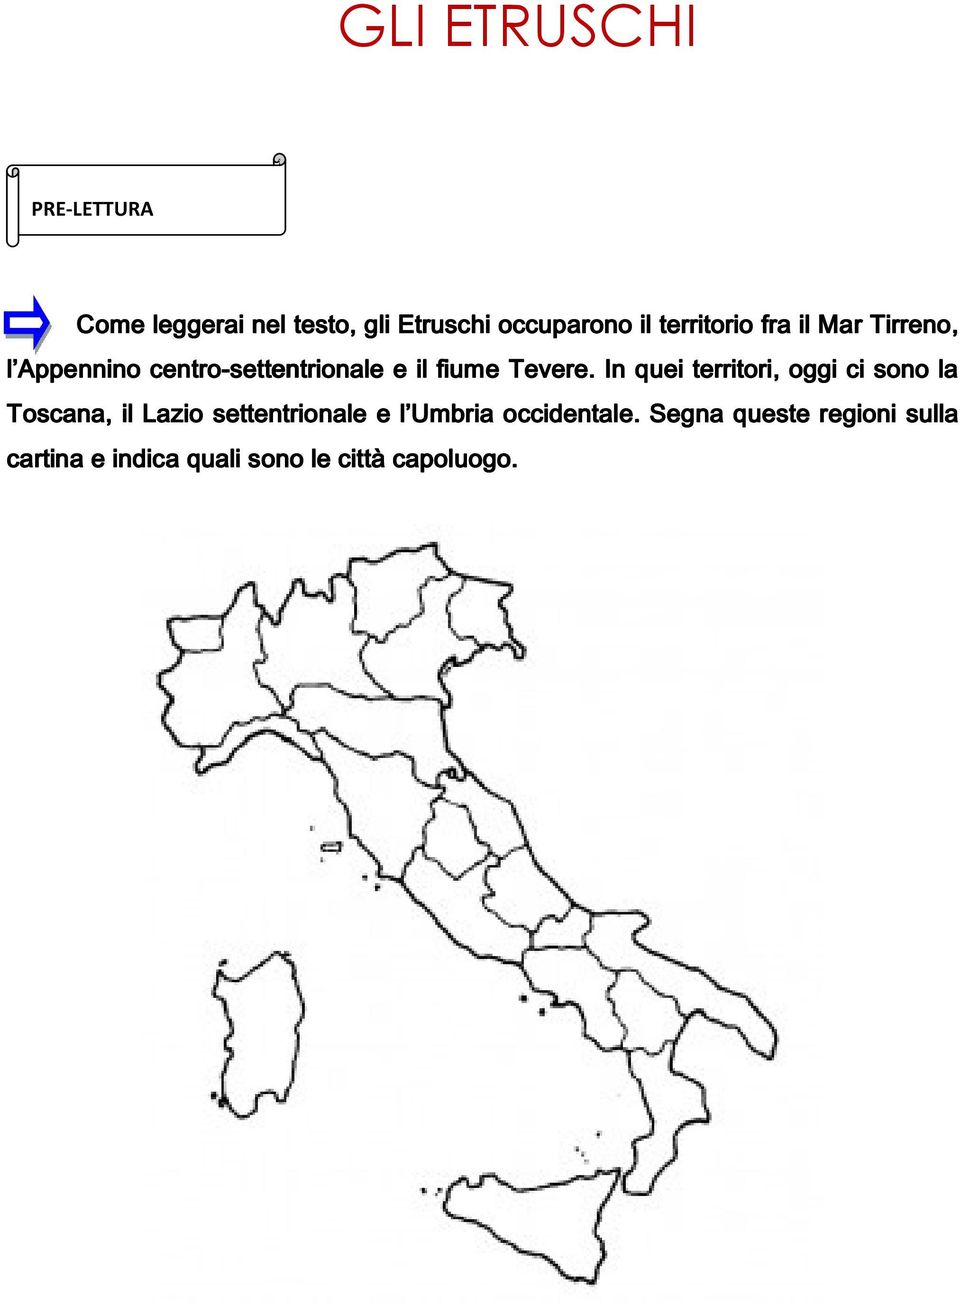 In quei territori, oggi ci sono la Toscana, il Lazio settentrionale e l Umbria